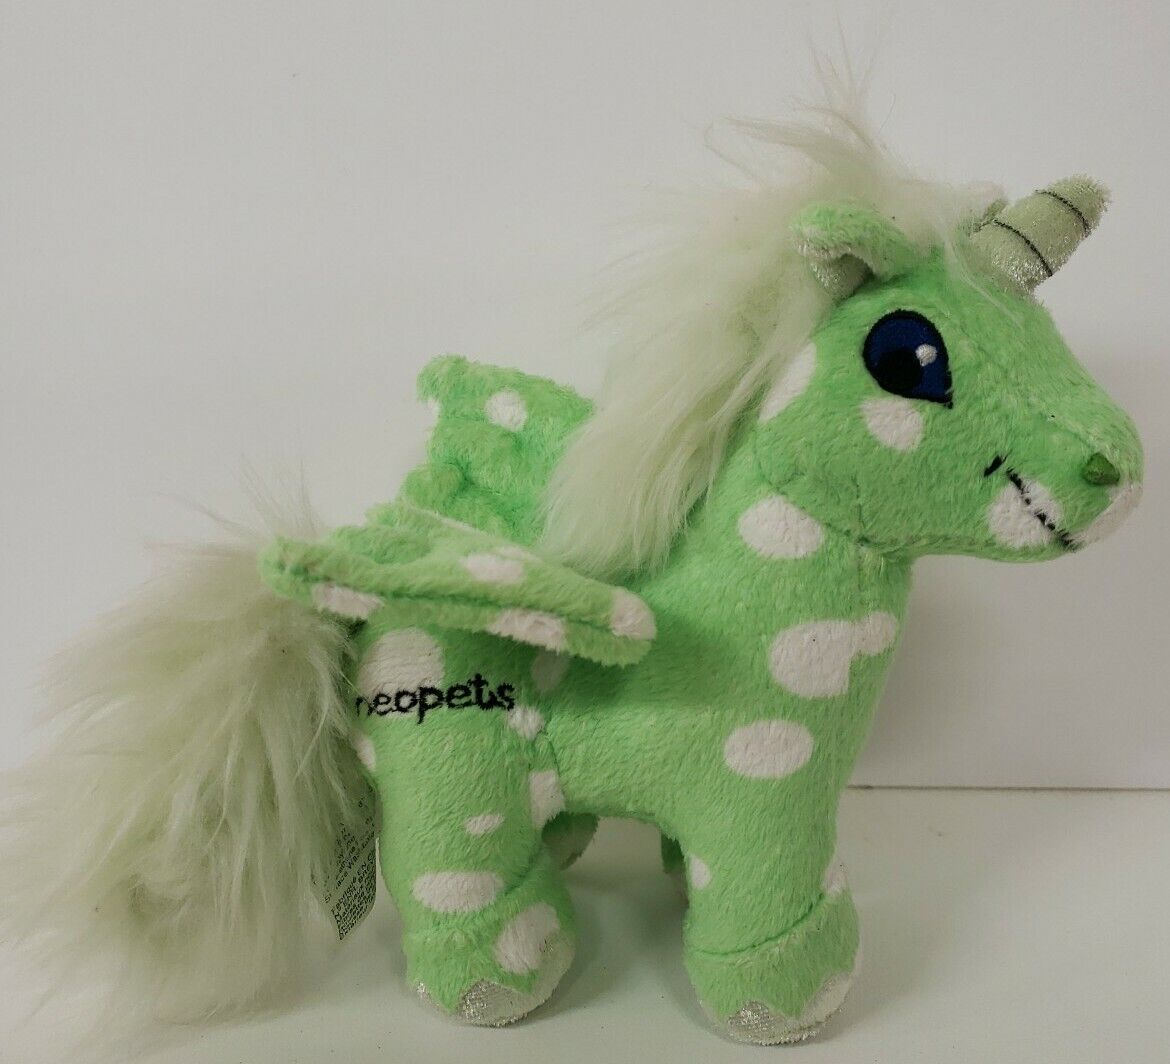 Neopets Speckled Green Uni Plush 6” Pegasus Unicorn 2008 Jakks P